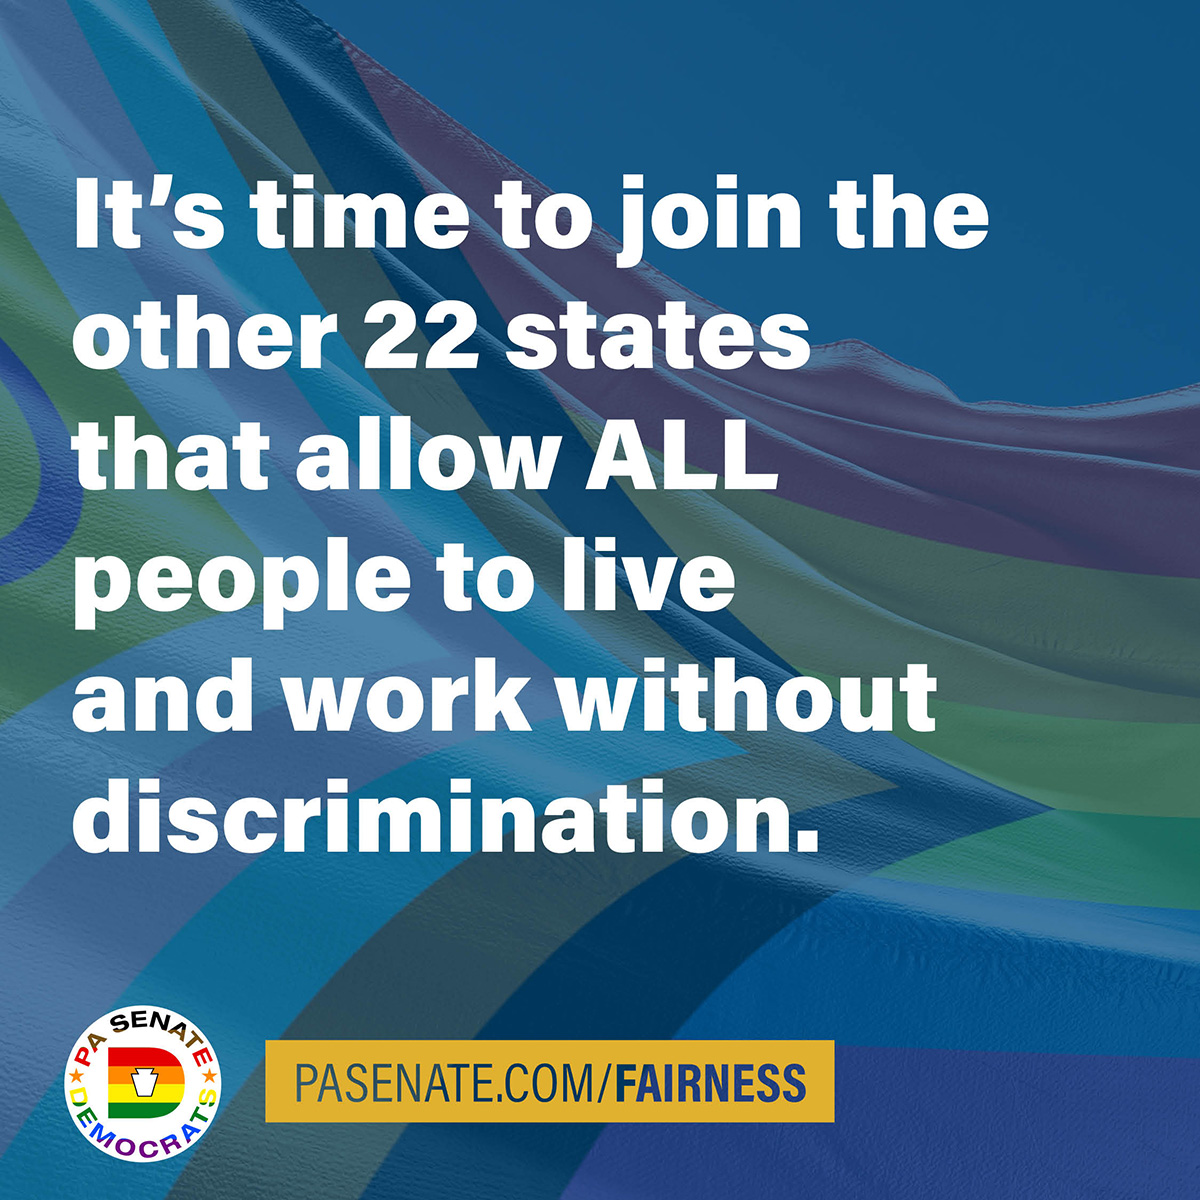 Es hora de unirse a los otros 22 estados que permiten a TODAS las personas vivir y trabajar sin discriminación.